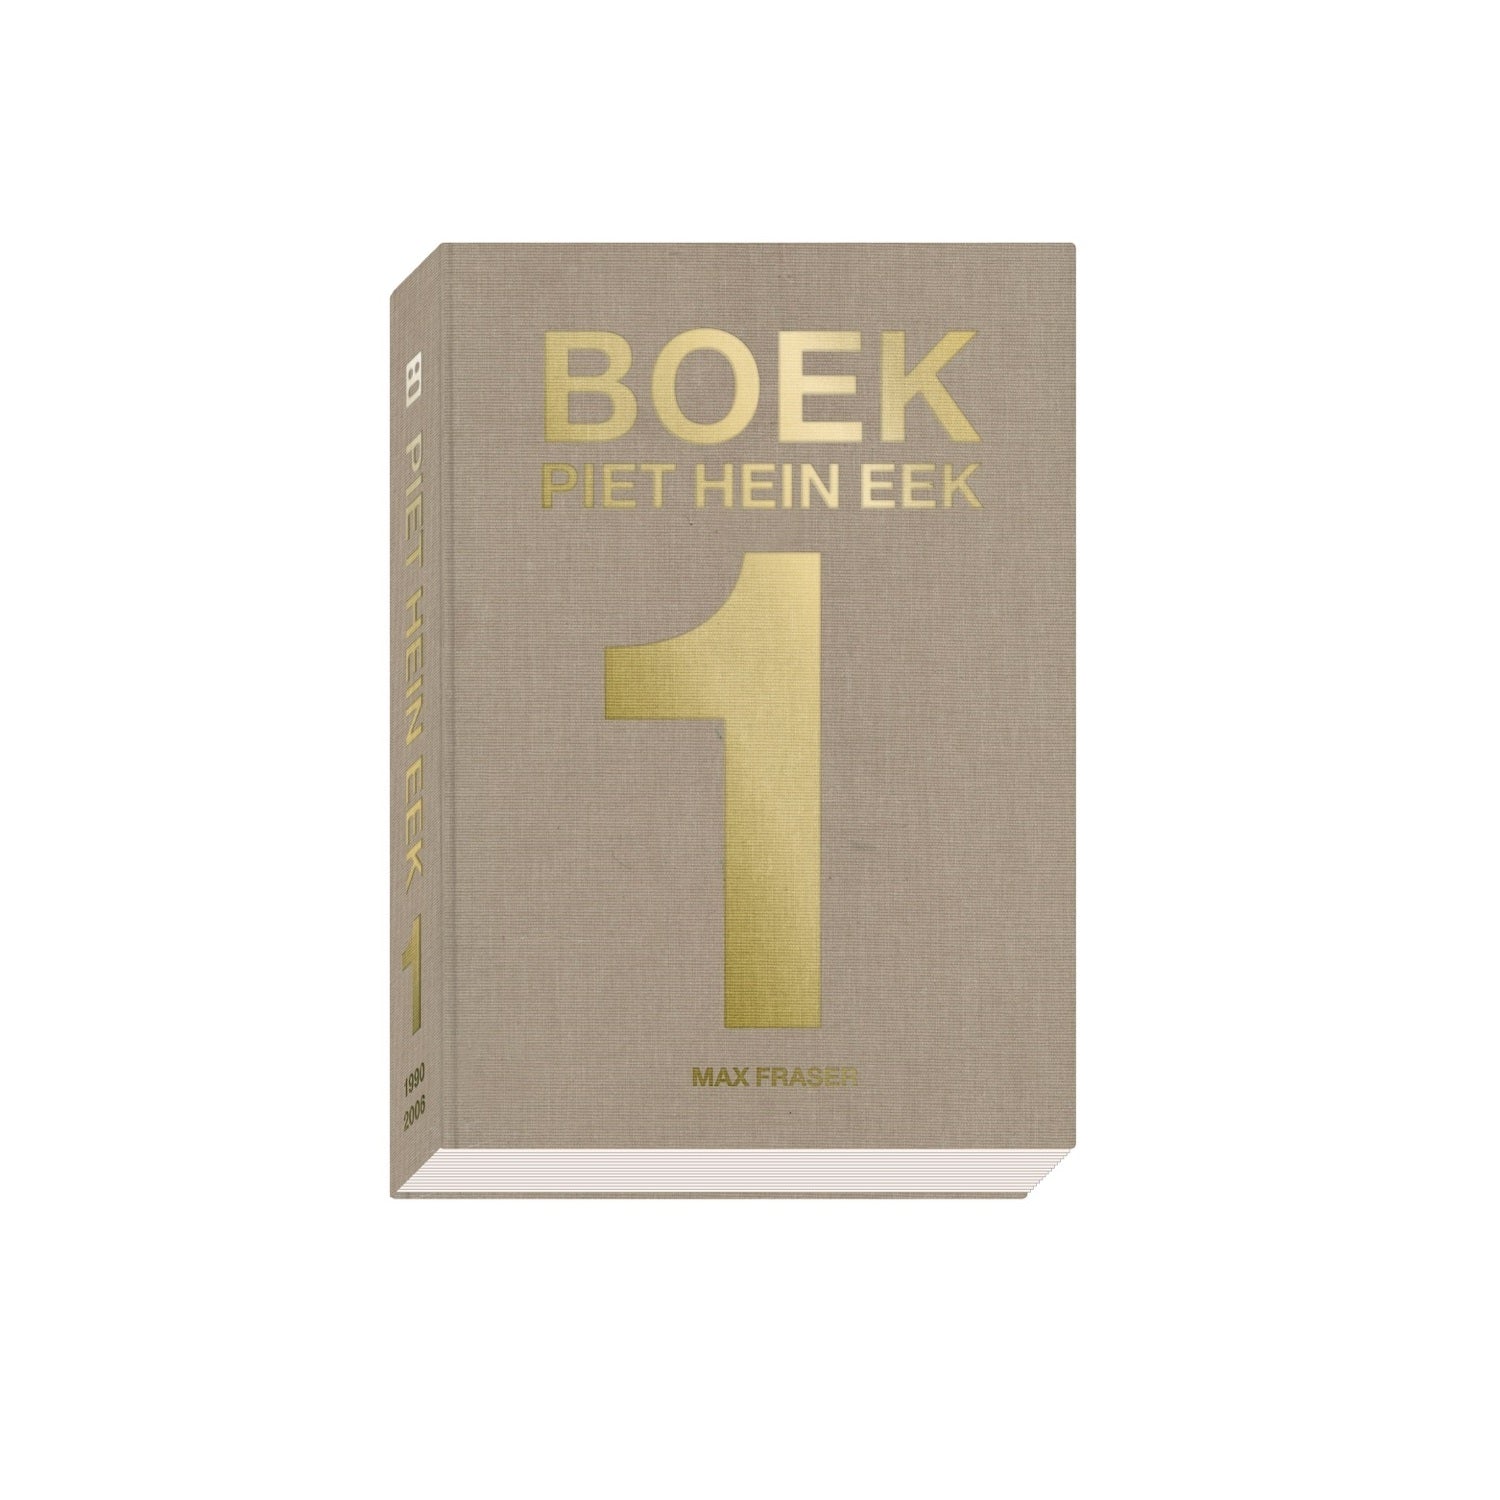 Boek Piet Hein Eek - Piet Hein Eek | Frozen Fountain – The Frozen